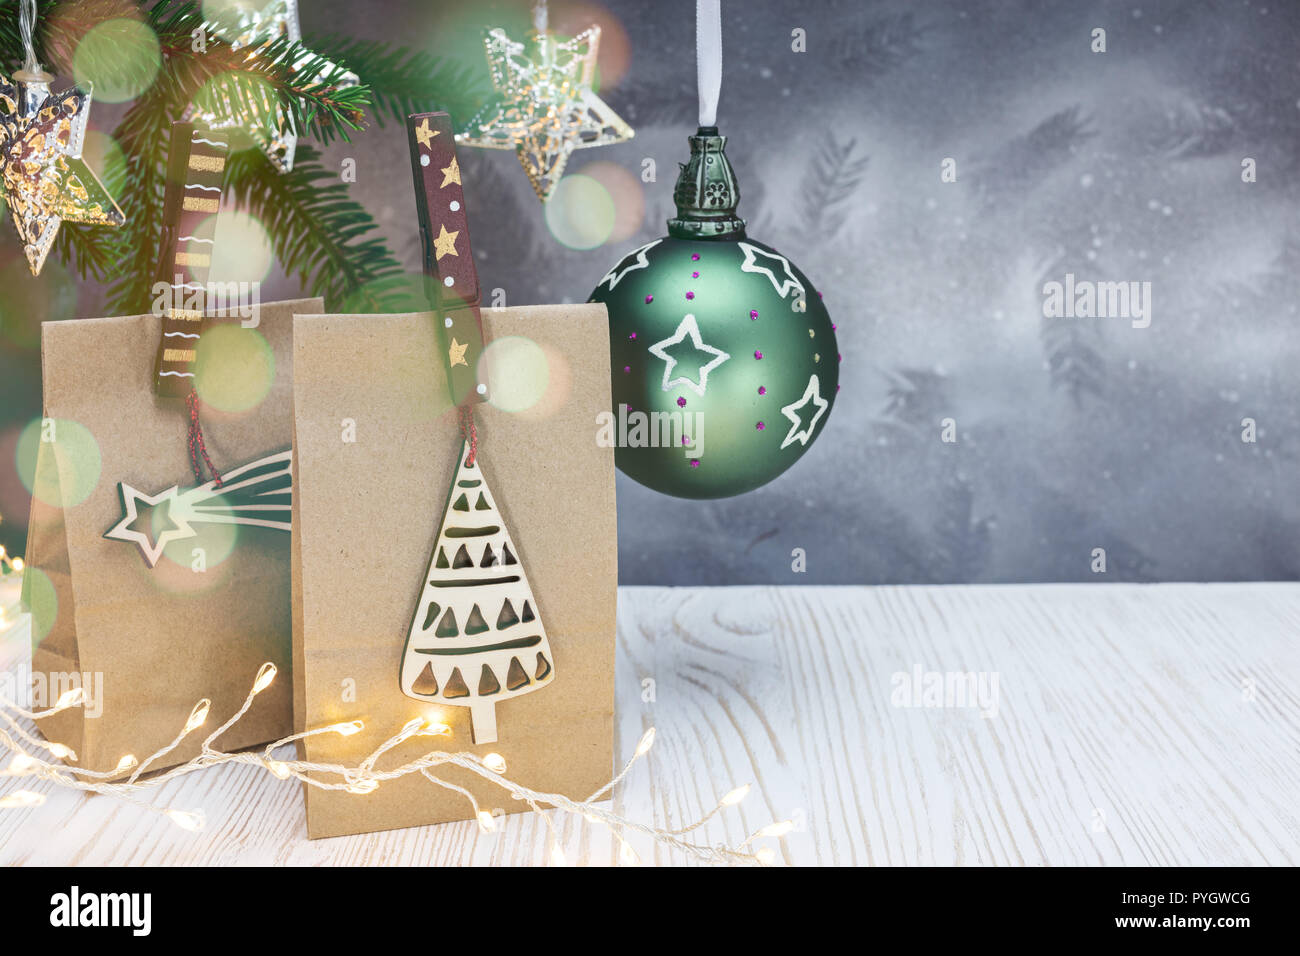 Papier Geschenkbeutel mit hölzernen Stiften eingerichtet, christmas ball, Fir Tree Branch und leuchtende Lichter an Weihnachten Hintergrund Stockfoto